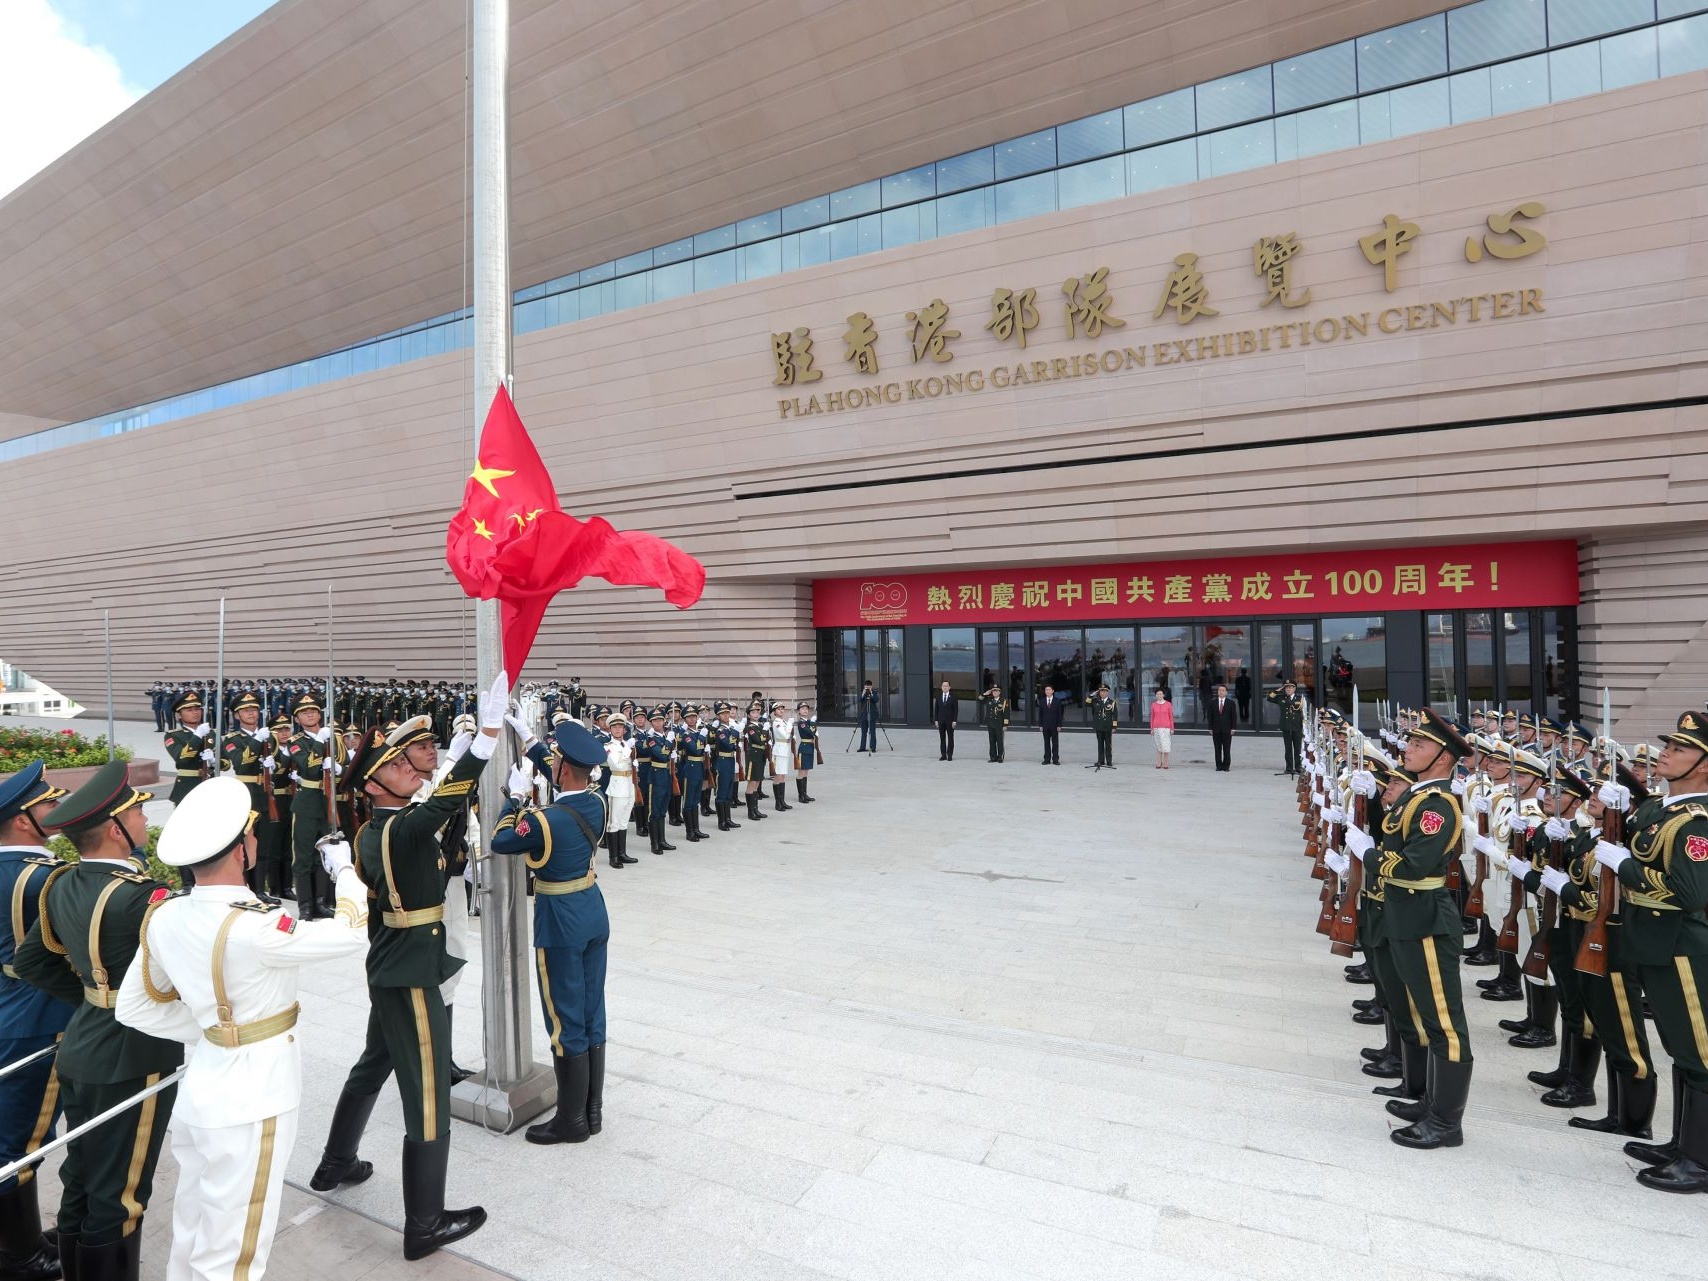 解放军驻香港部队展览中心建成开放